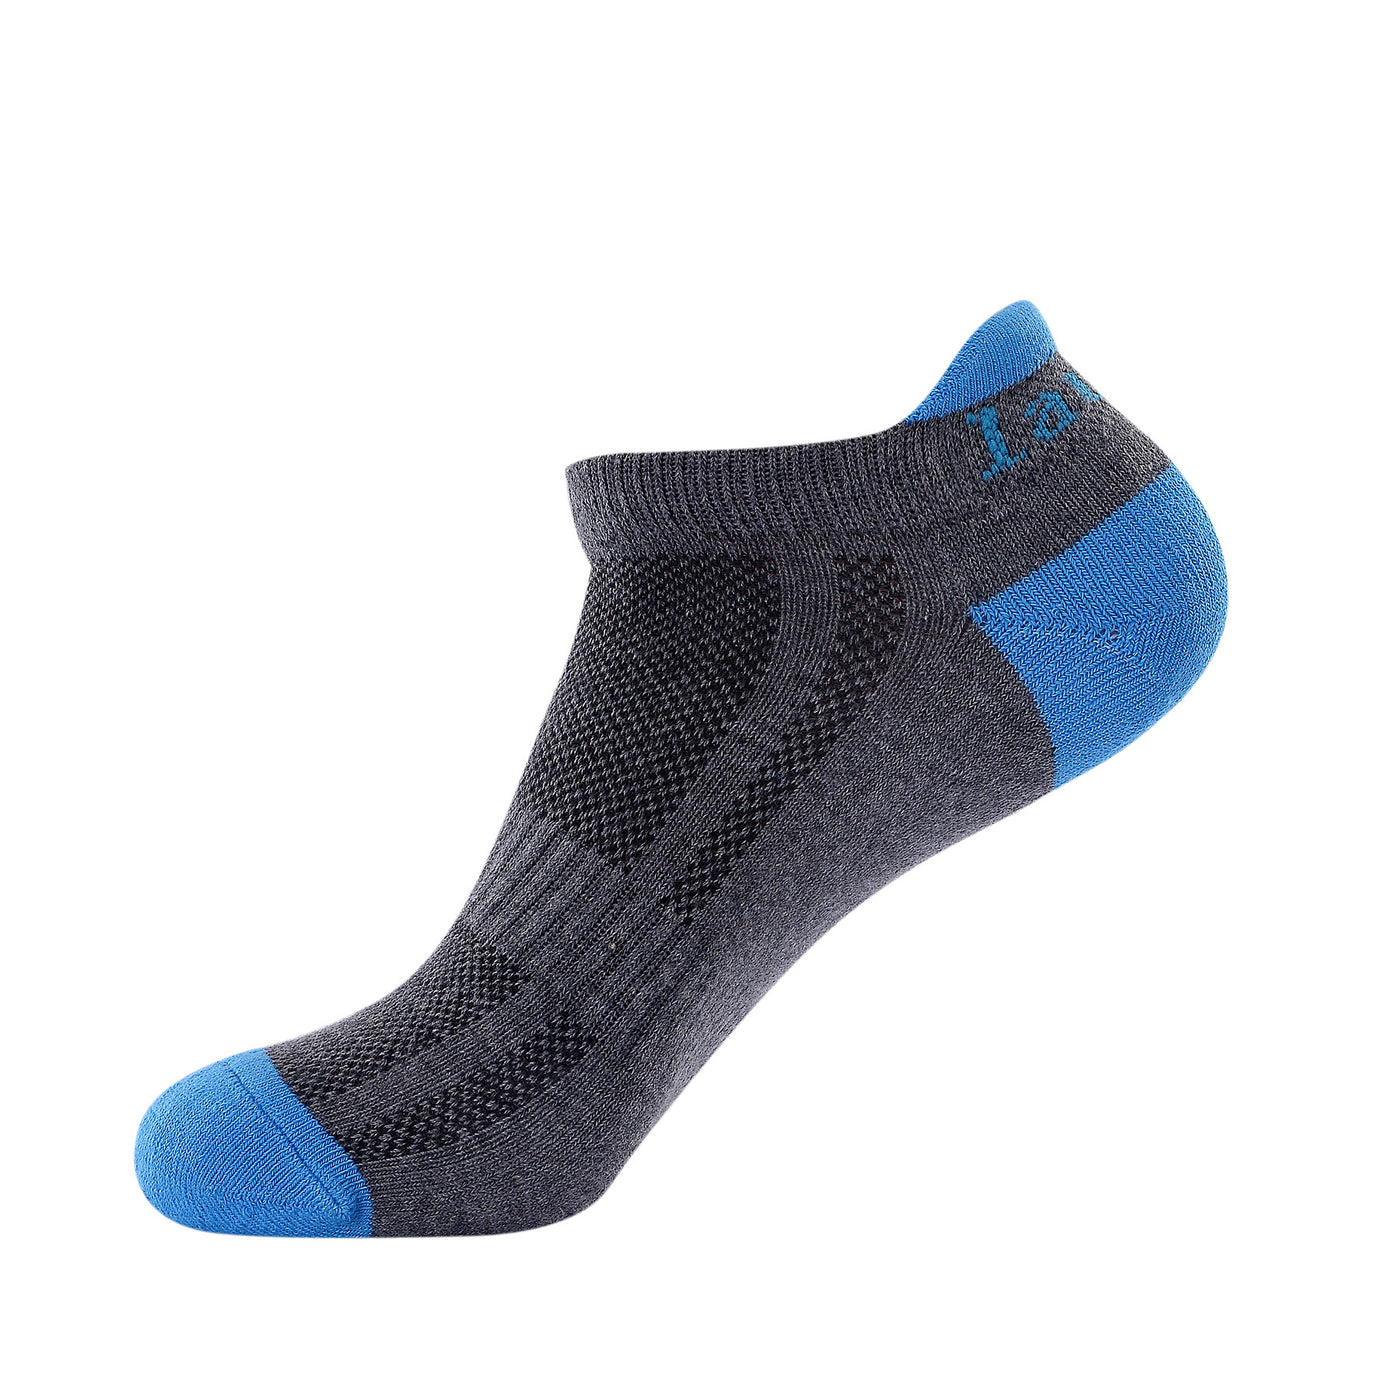 Laulax 4 pares de calcetines profesionales para correr Coolmax para mujer, protección del tendón de Aquiles, talla UK 3 - 8 / Europa 36 - 42, set de regalo